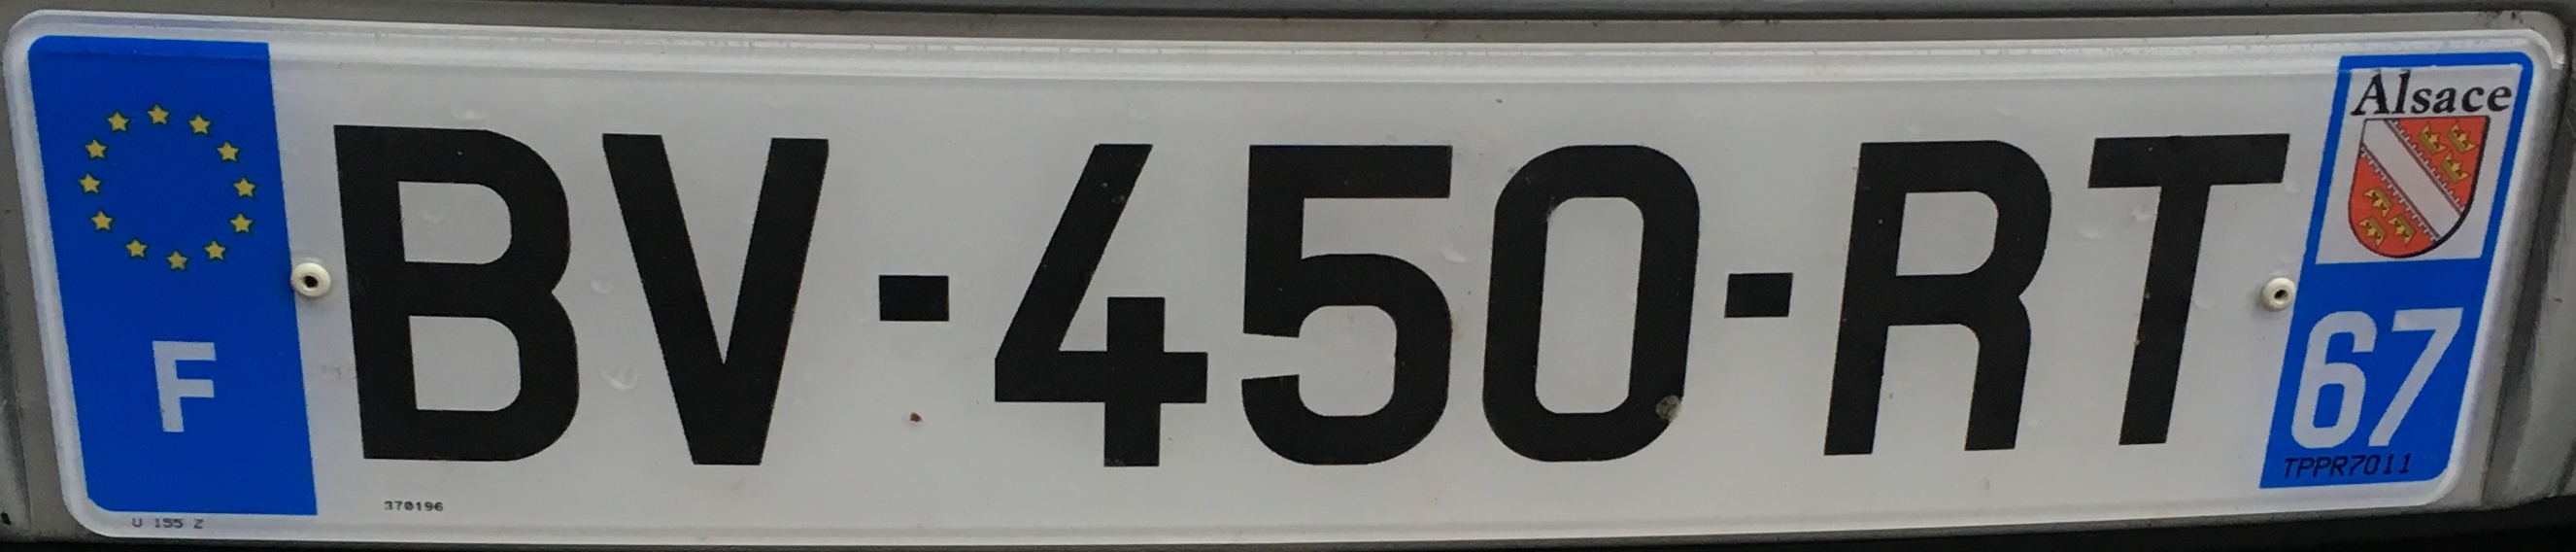 Francouzská registrační značka – 67 - Bas-Rhin, foto: www.podalnici.cz